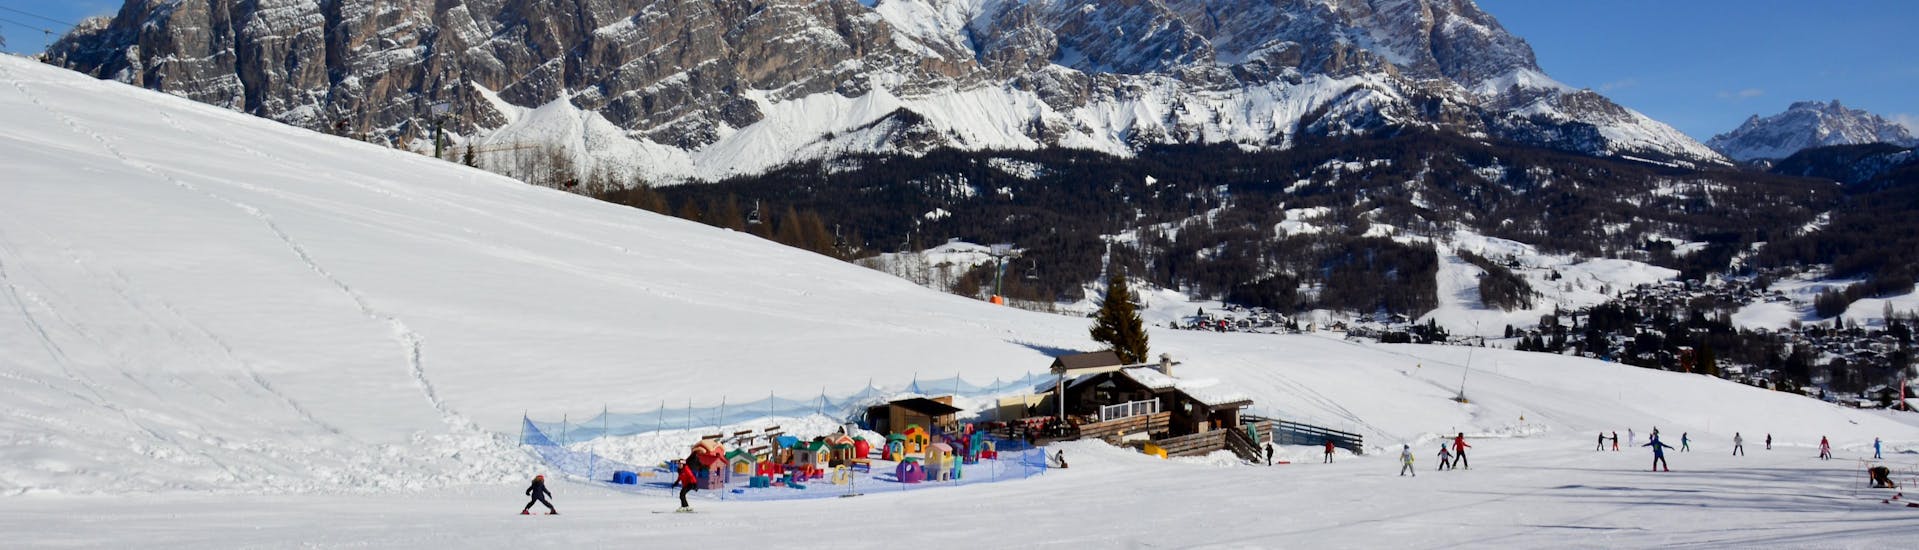 Vista di un campo scuola ad Alleghe nella stazione sciistica Ski Civetta, dove le scuole di sci locali offrono le loro lezioni di sci.